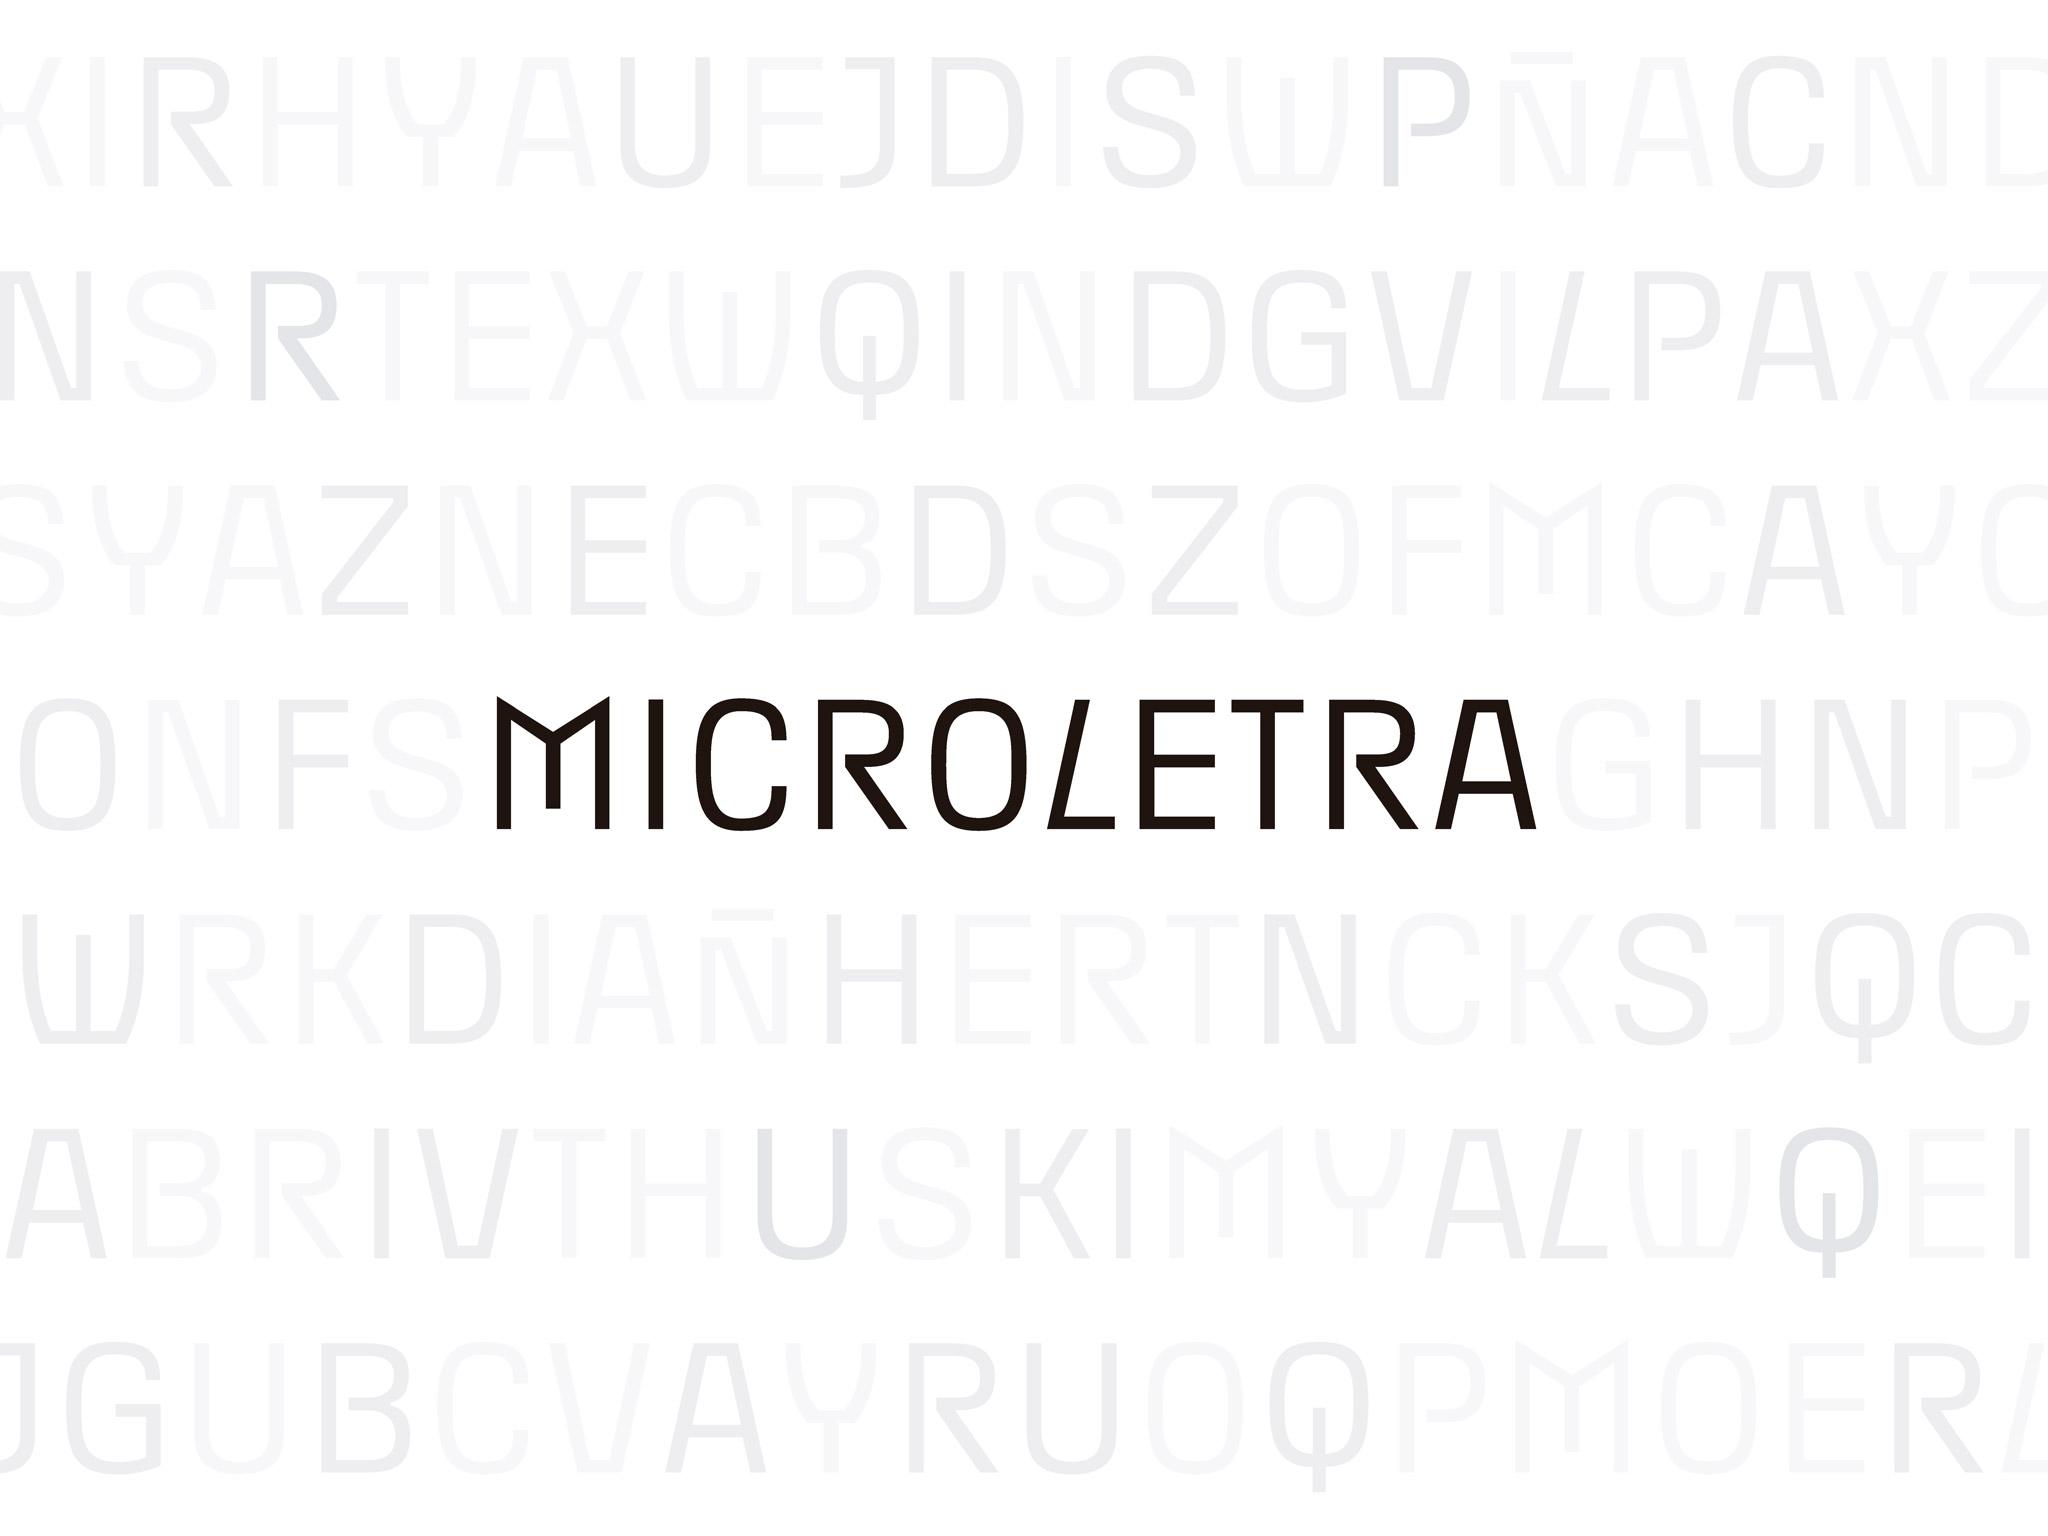 Micro Letra